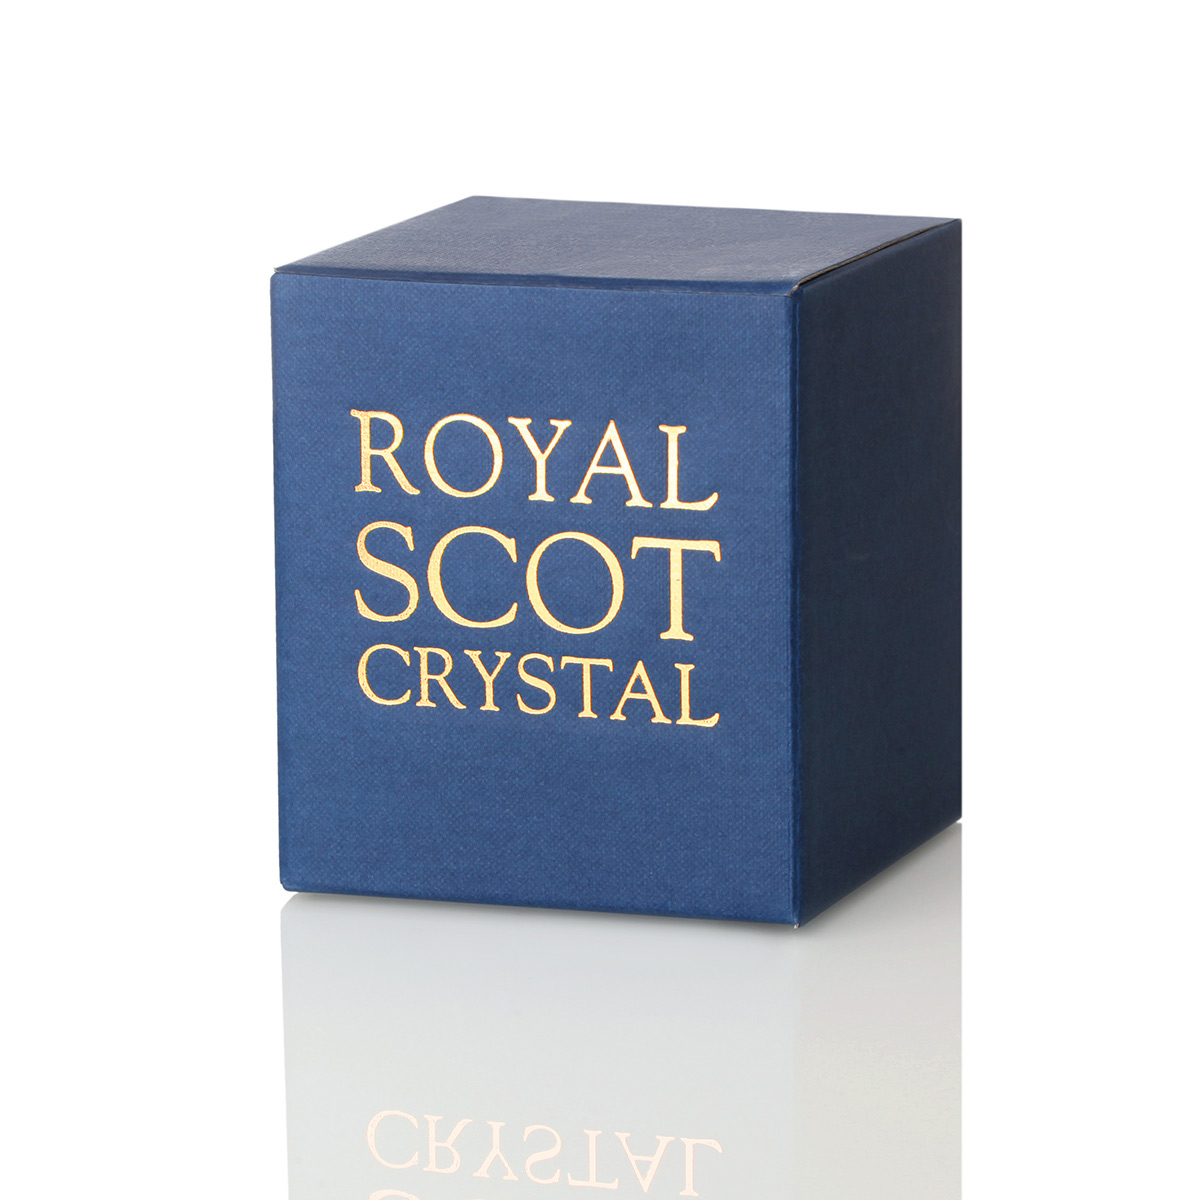 Saltire Of Scotland - Handgefertigter Whisky Tumbler aus Kristallglas mit Gravur